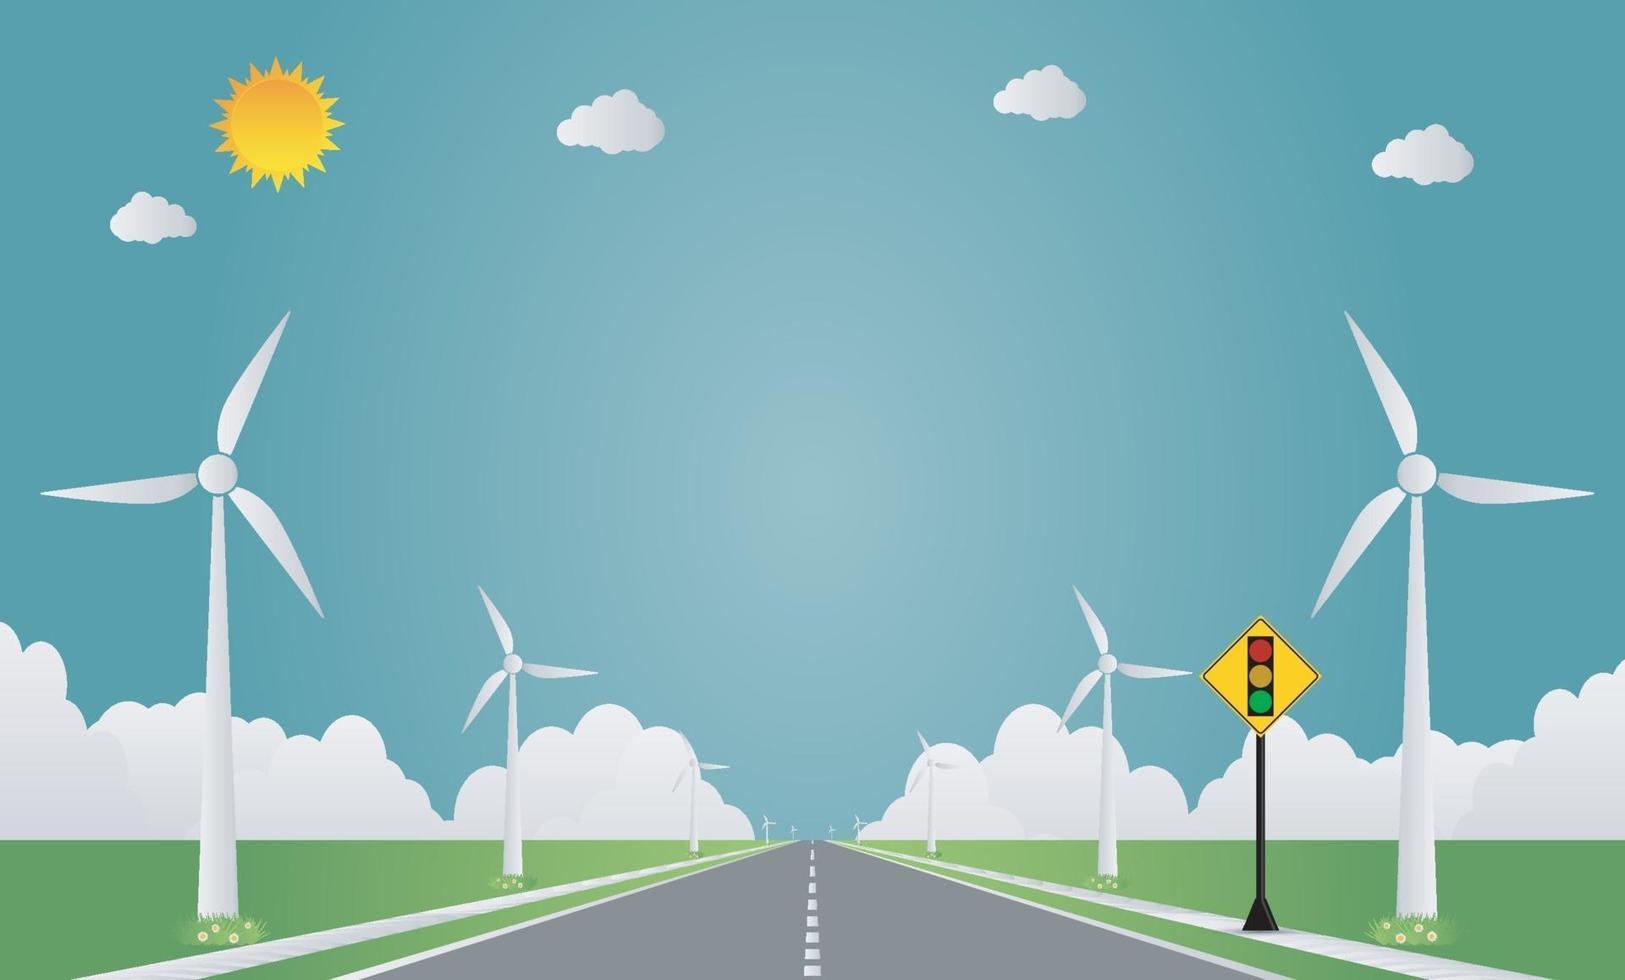 semáforo em estrada natural com turbina eólica. Ilustração em vetor